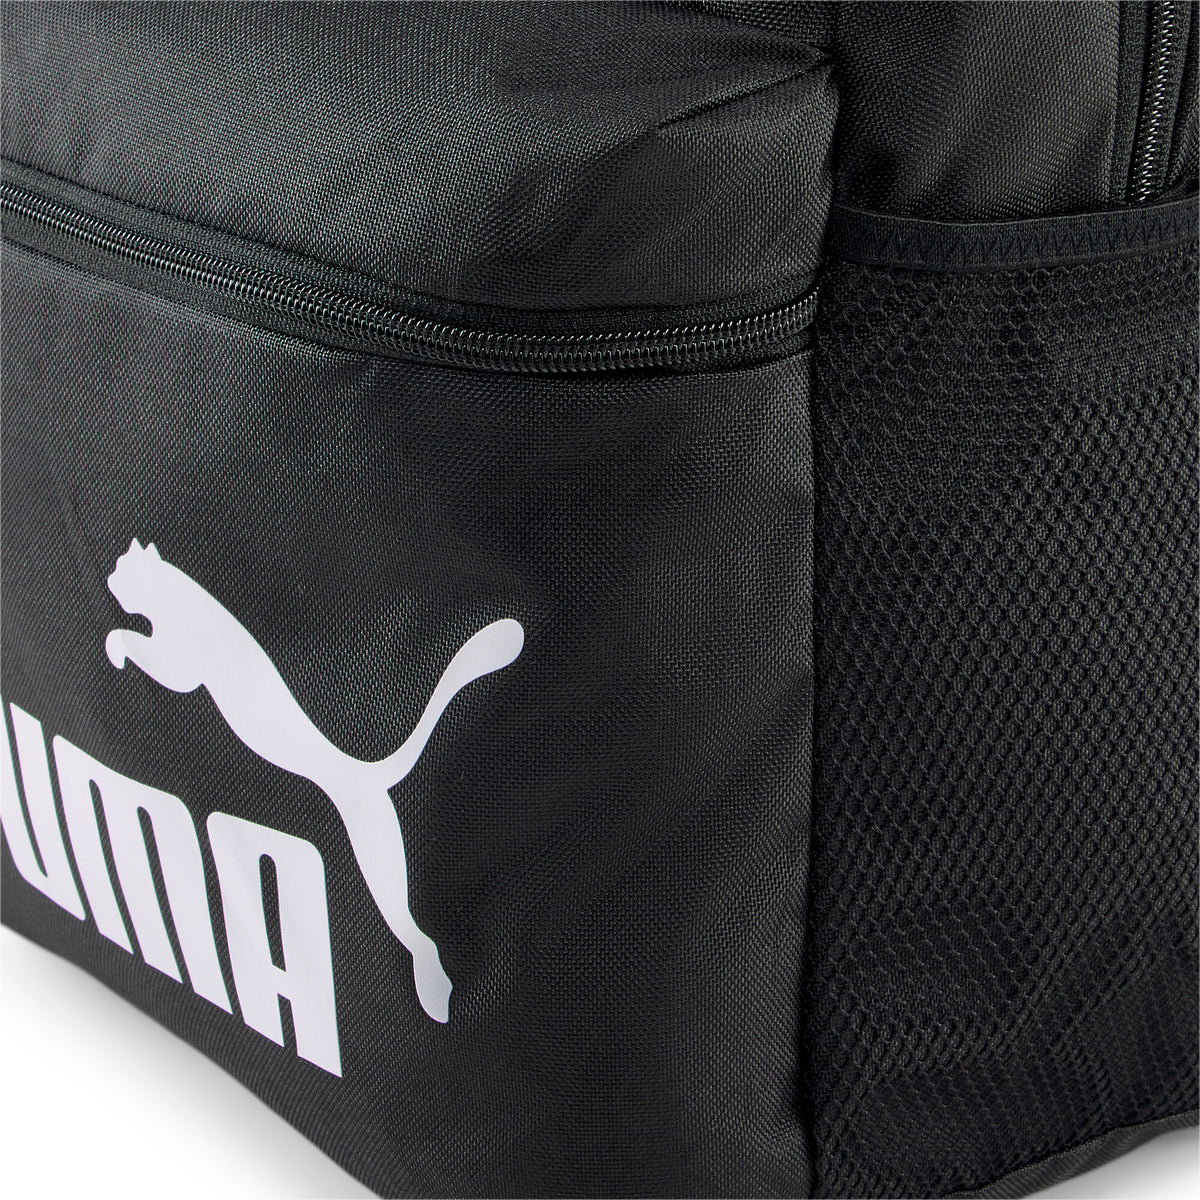 Mochila Unisex Phase Backpack Marca Puma